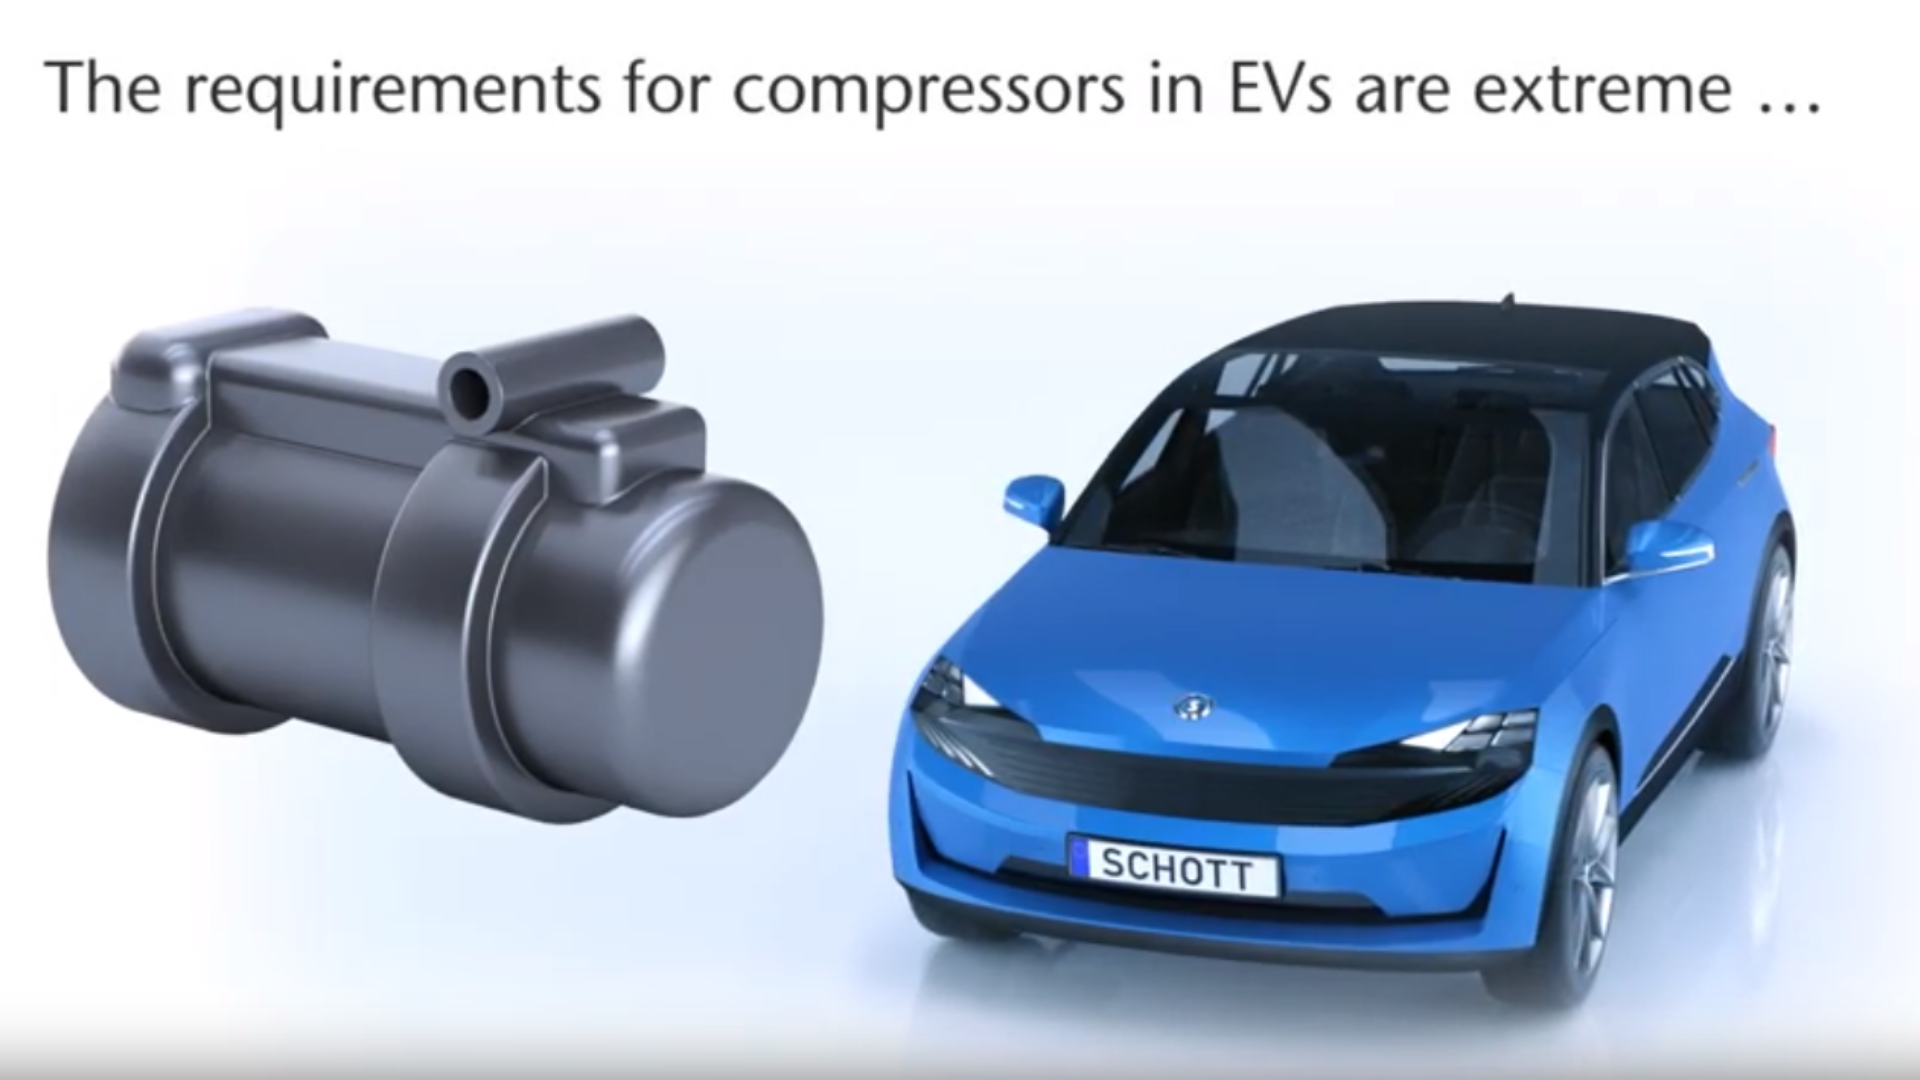 Klicken Sie hier, um zu erfahren, warum hochwertige Kompressor-Durchführungen in Klimaanlagen für die Automobilindustrie so wichtig sind